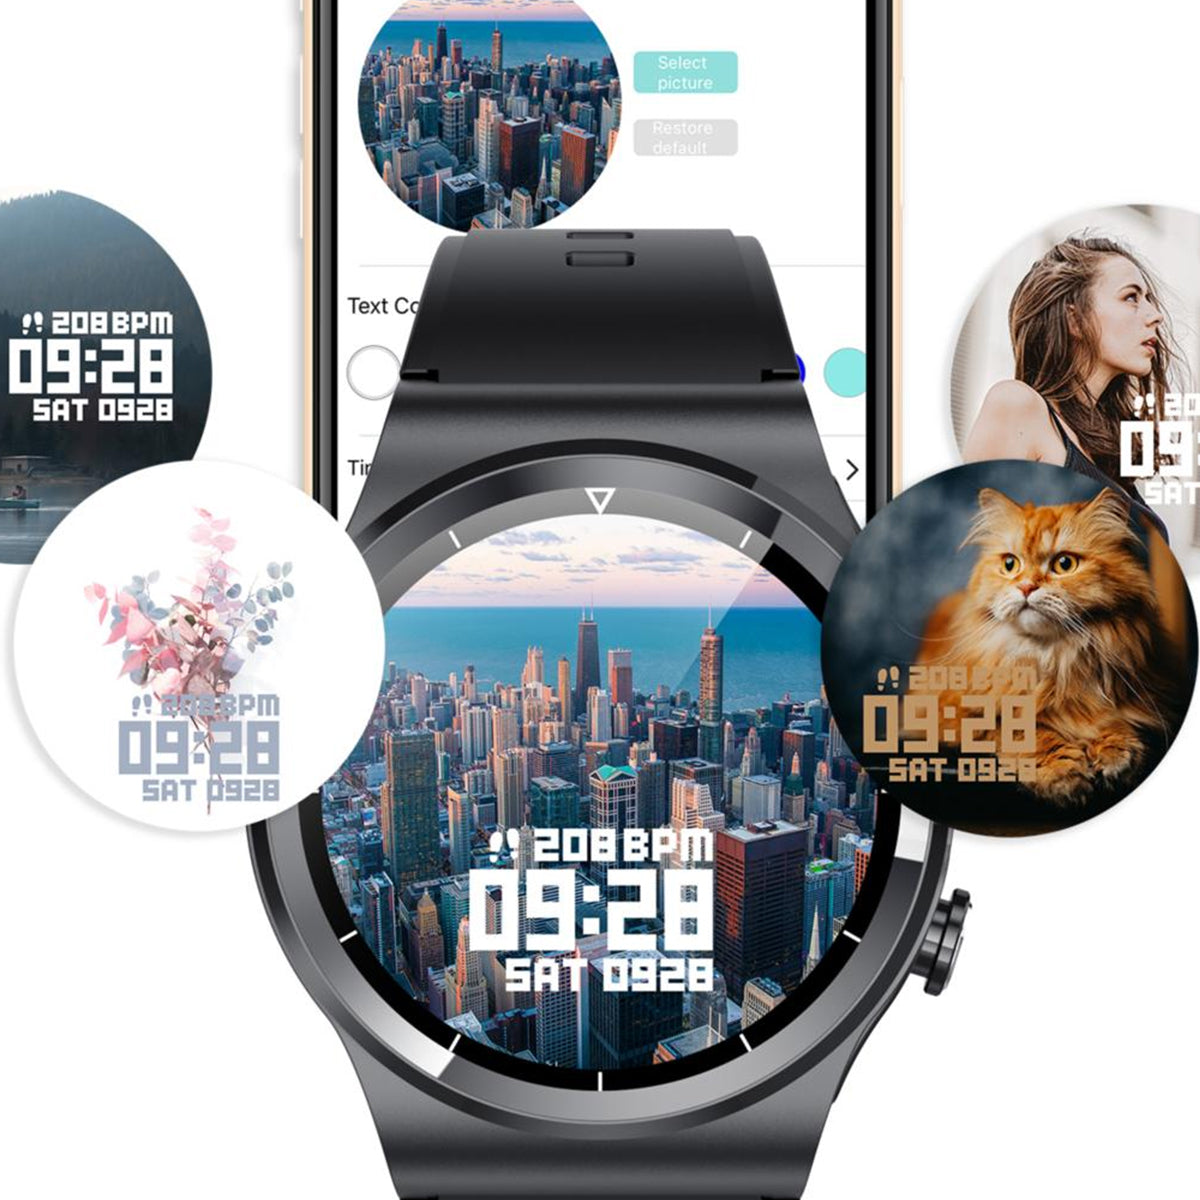 Reloj Inteligente Smart watch Con Audífonos Gt69 Fralugio Tws